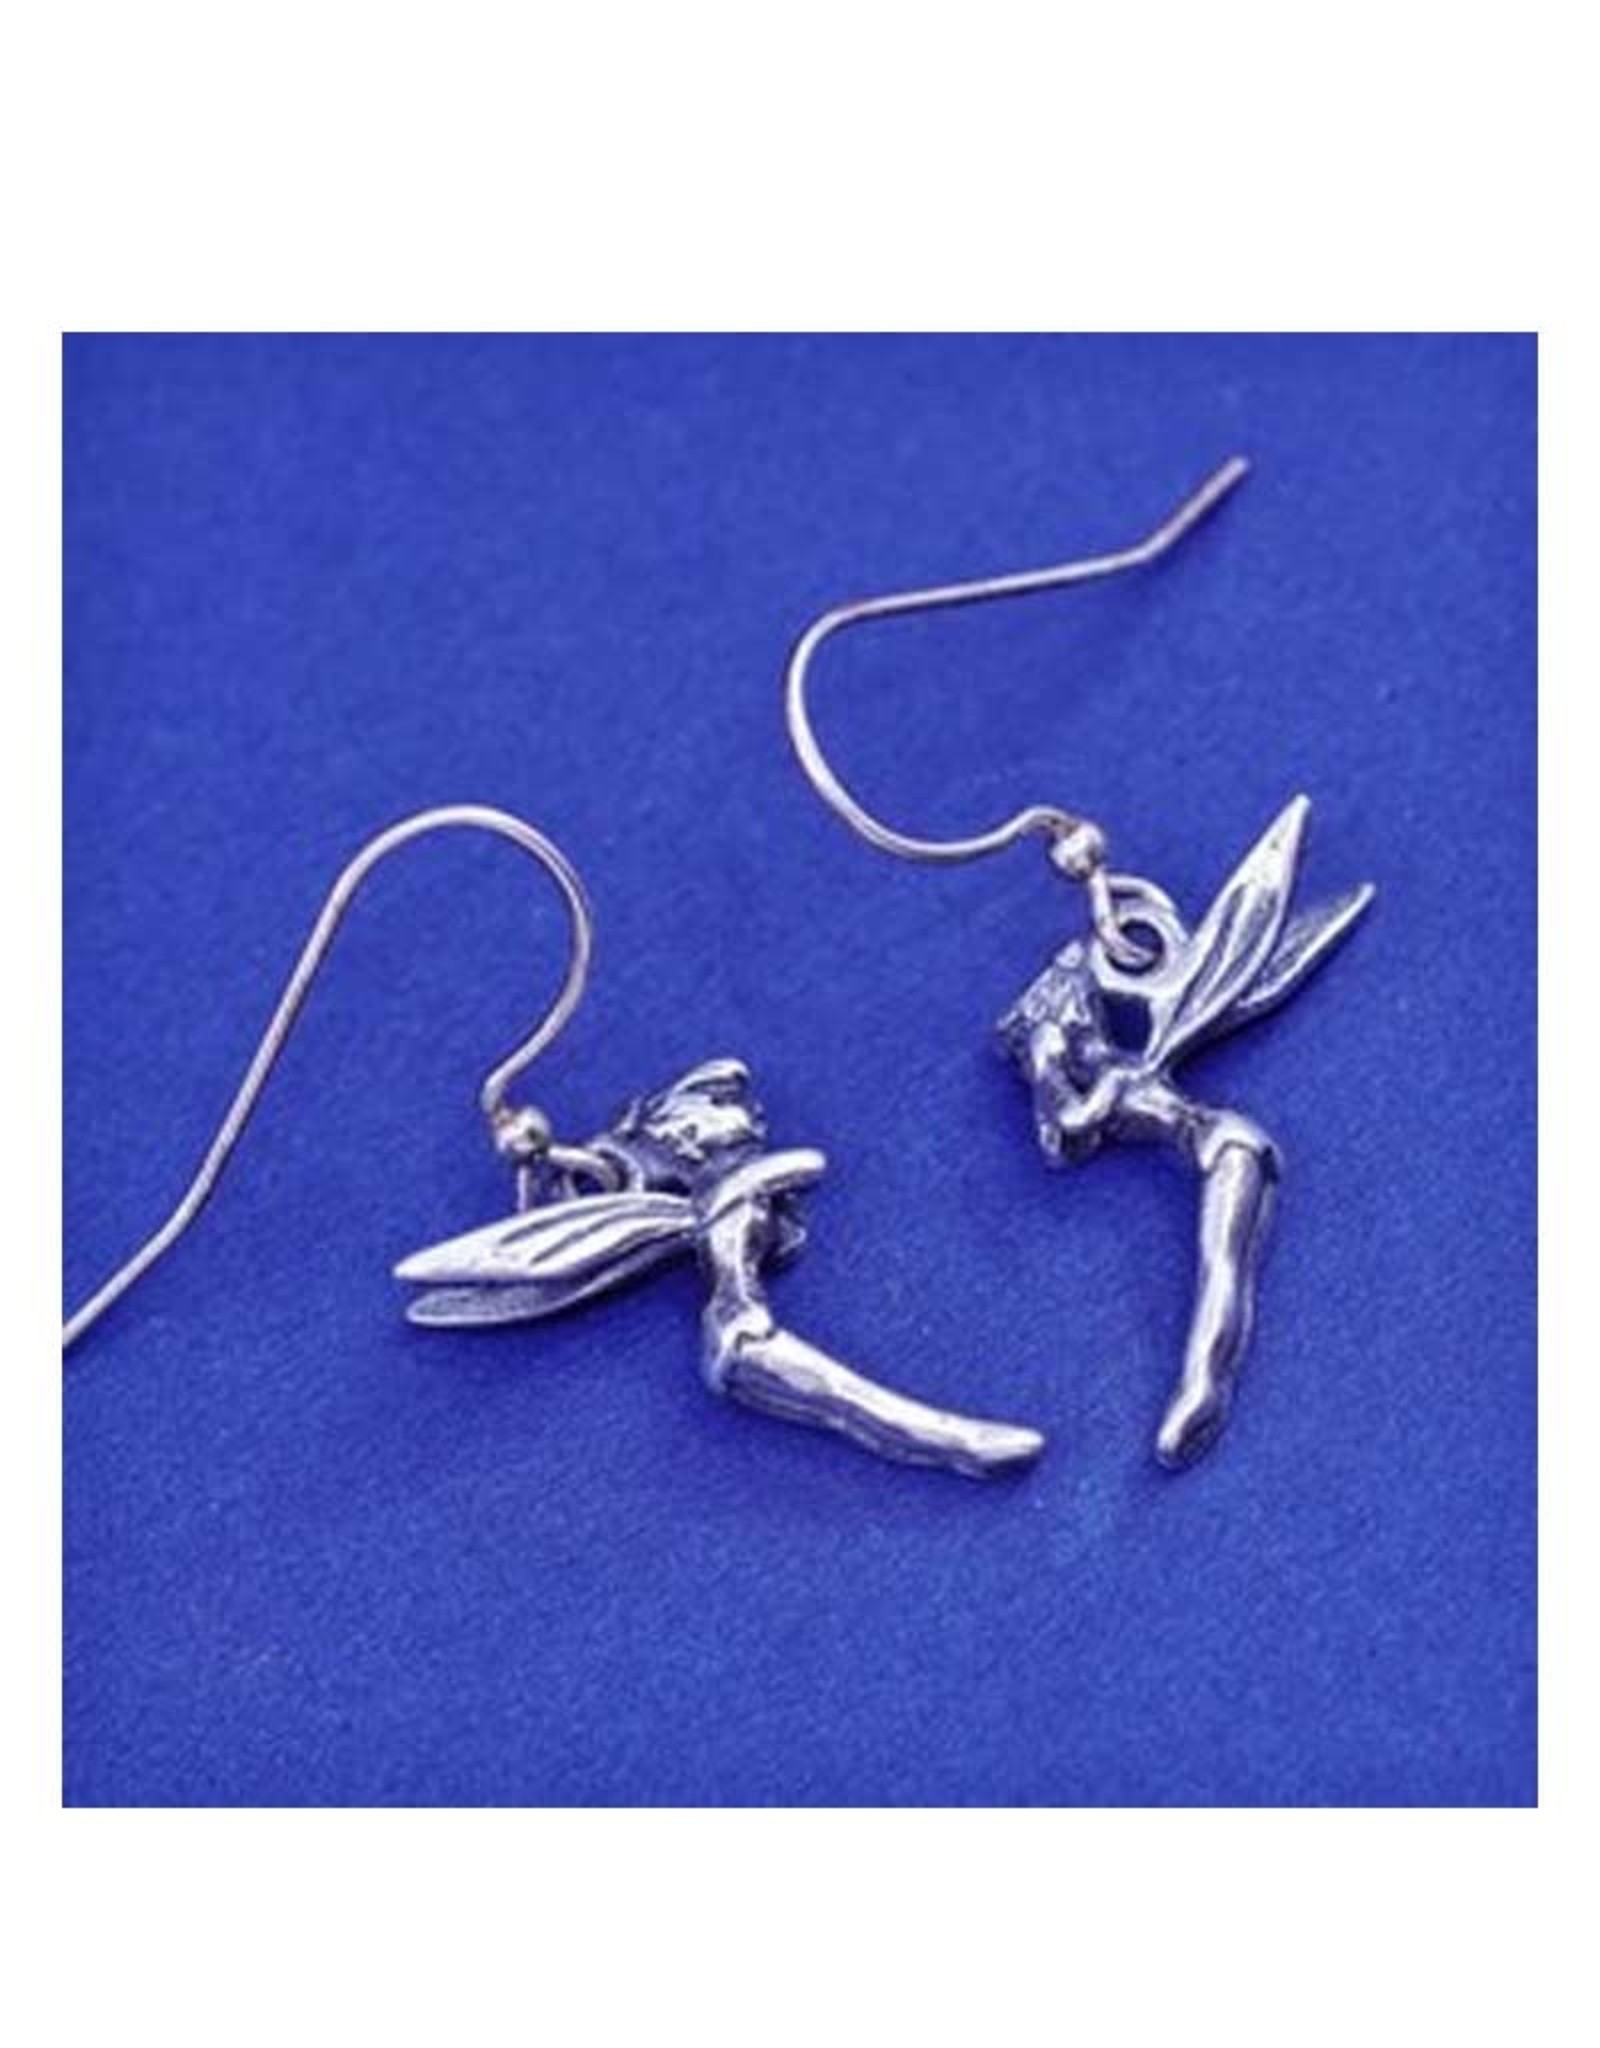 Fairy Sterling Silver Earrings